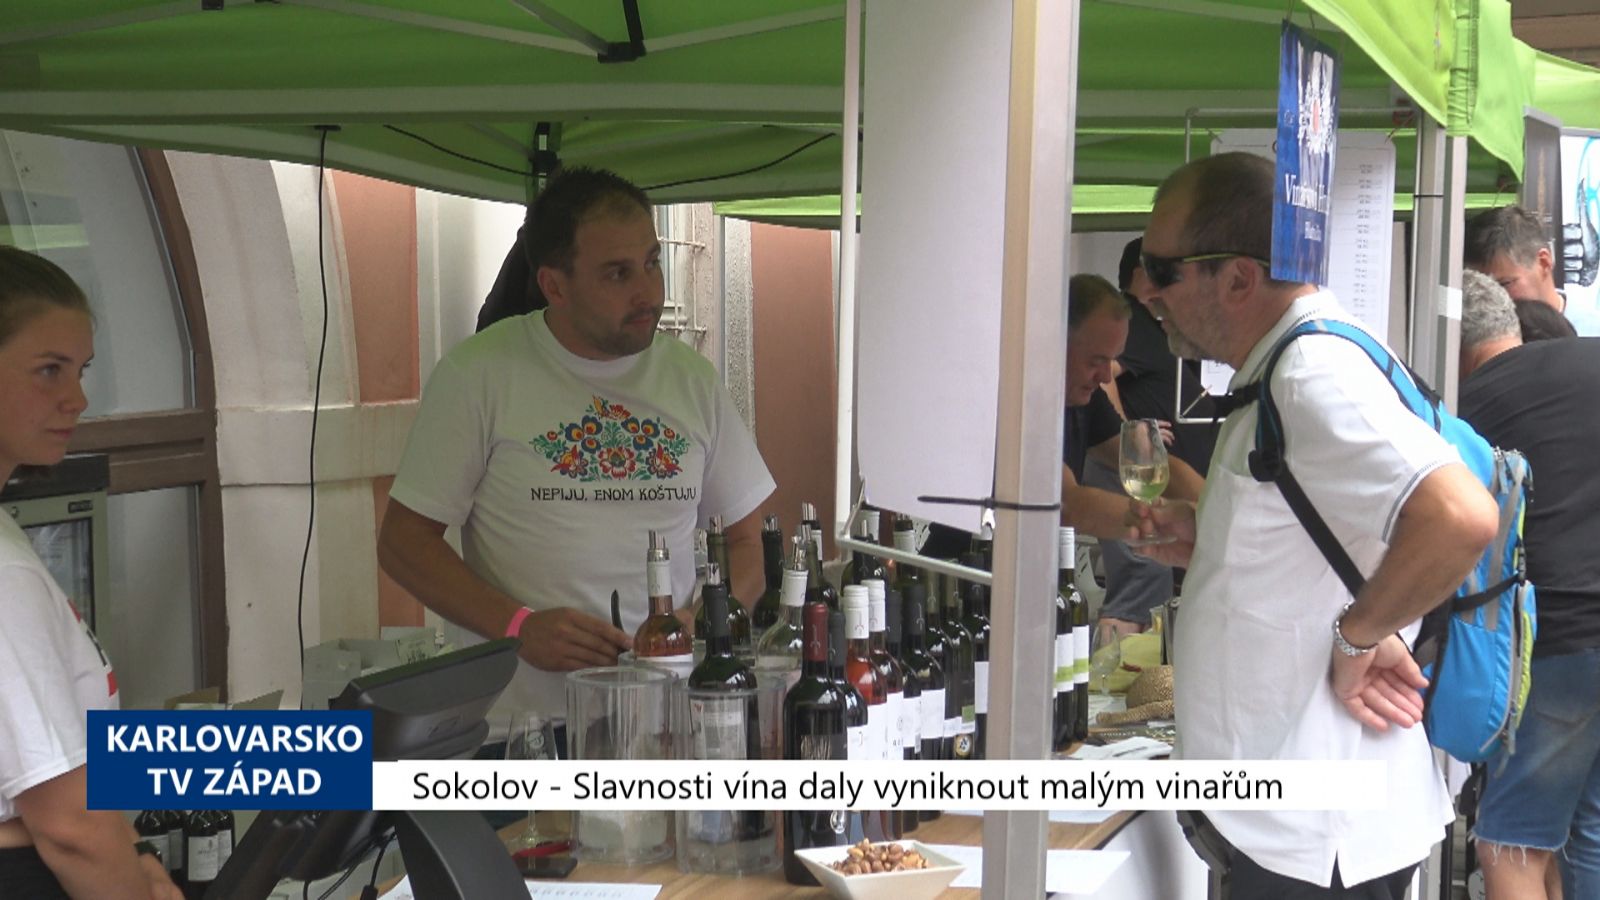 Sokolov: Slavnosti vína daly vyniknout malým vinařům (TV Západ)